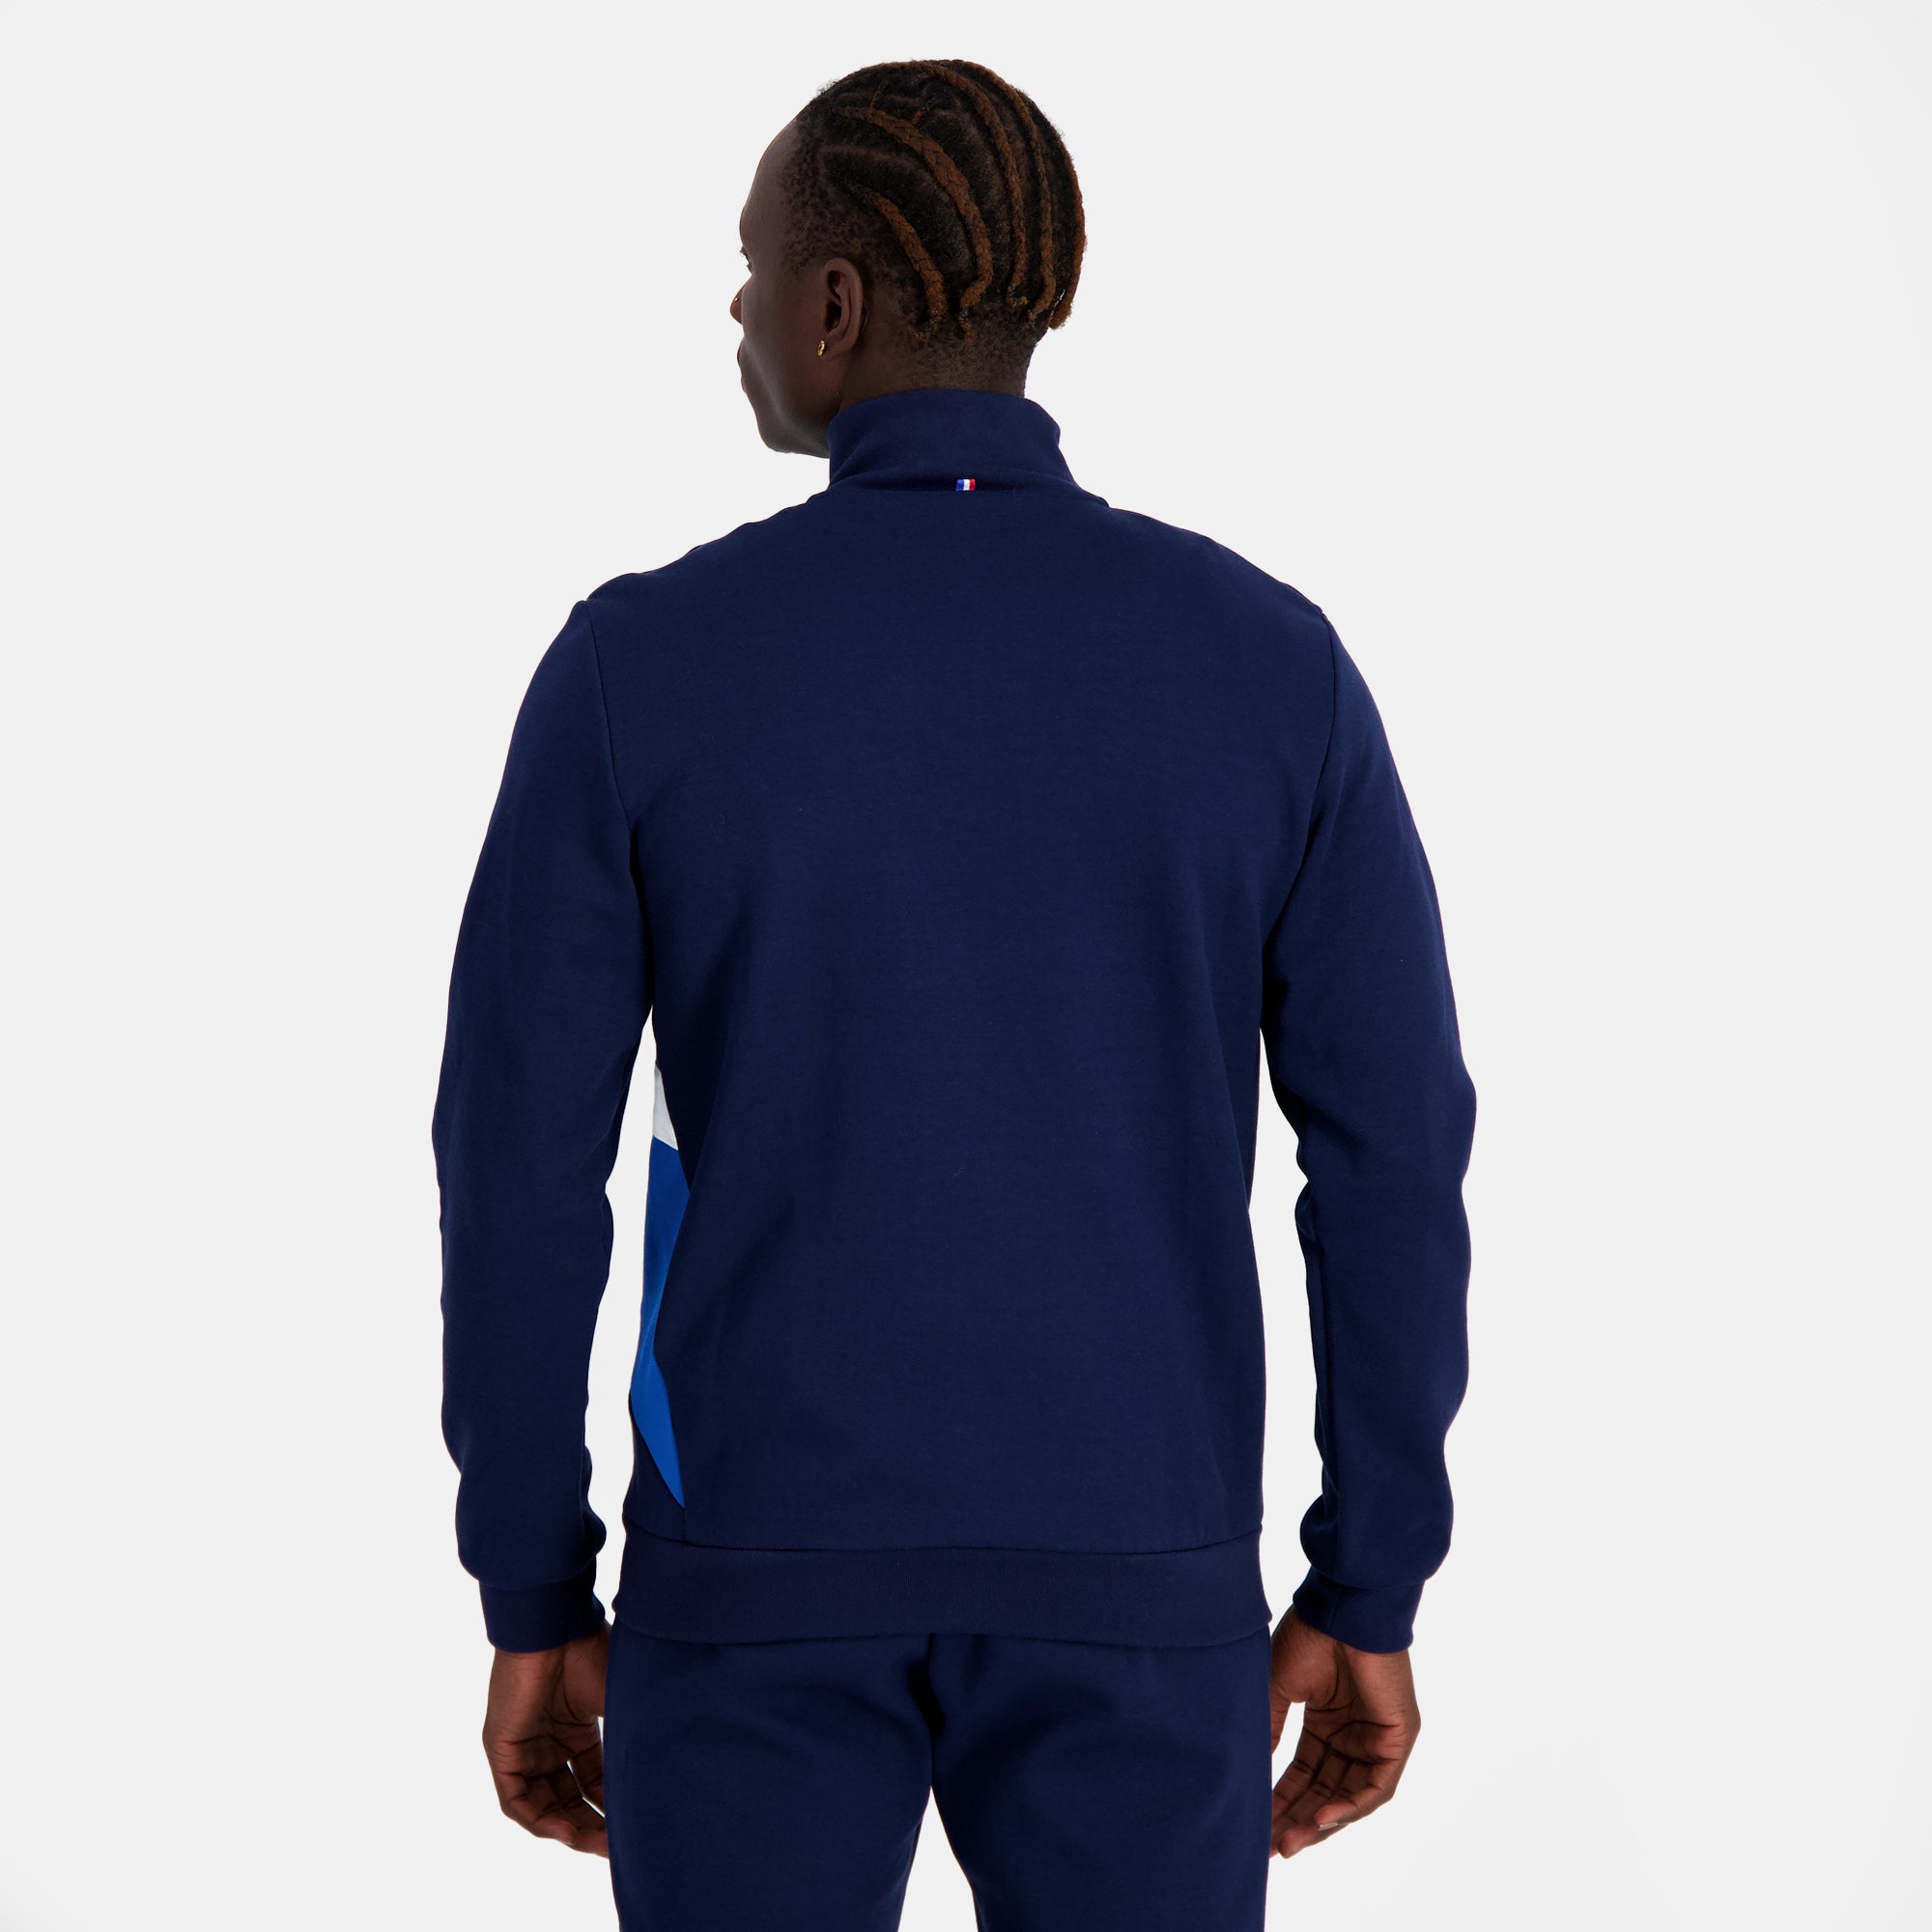 2410216-SAISON 1 FZ Sweat N°1 M bleu nuit  | Sweatshirtshirt Mit Reißverschluss für Herren